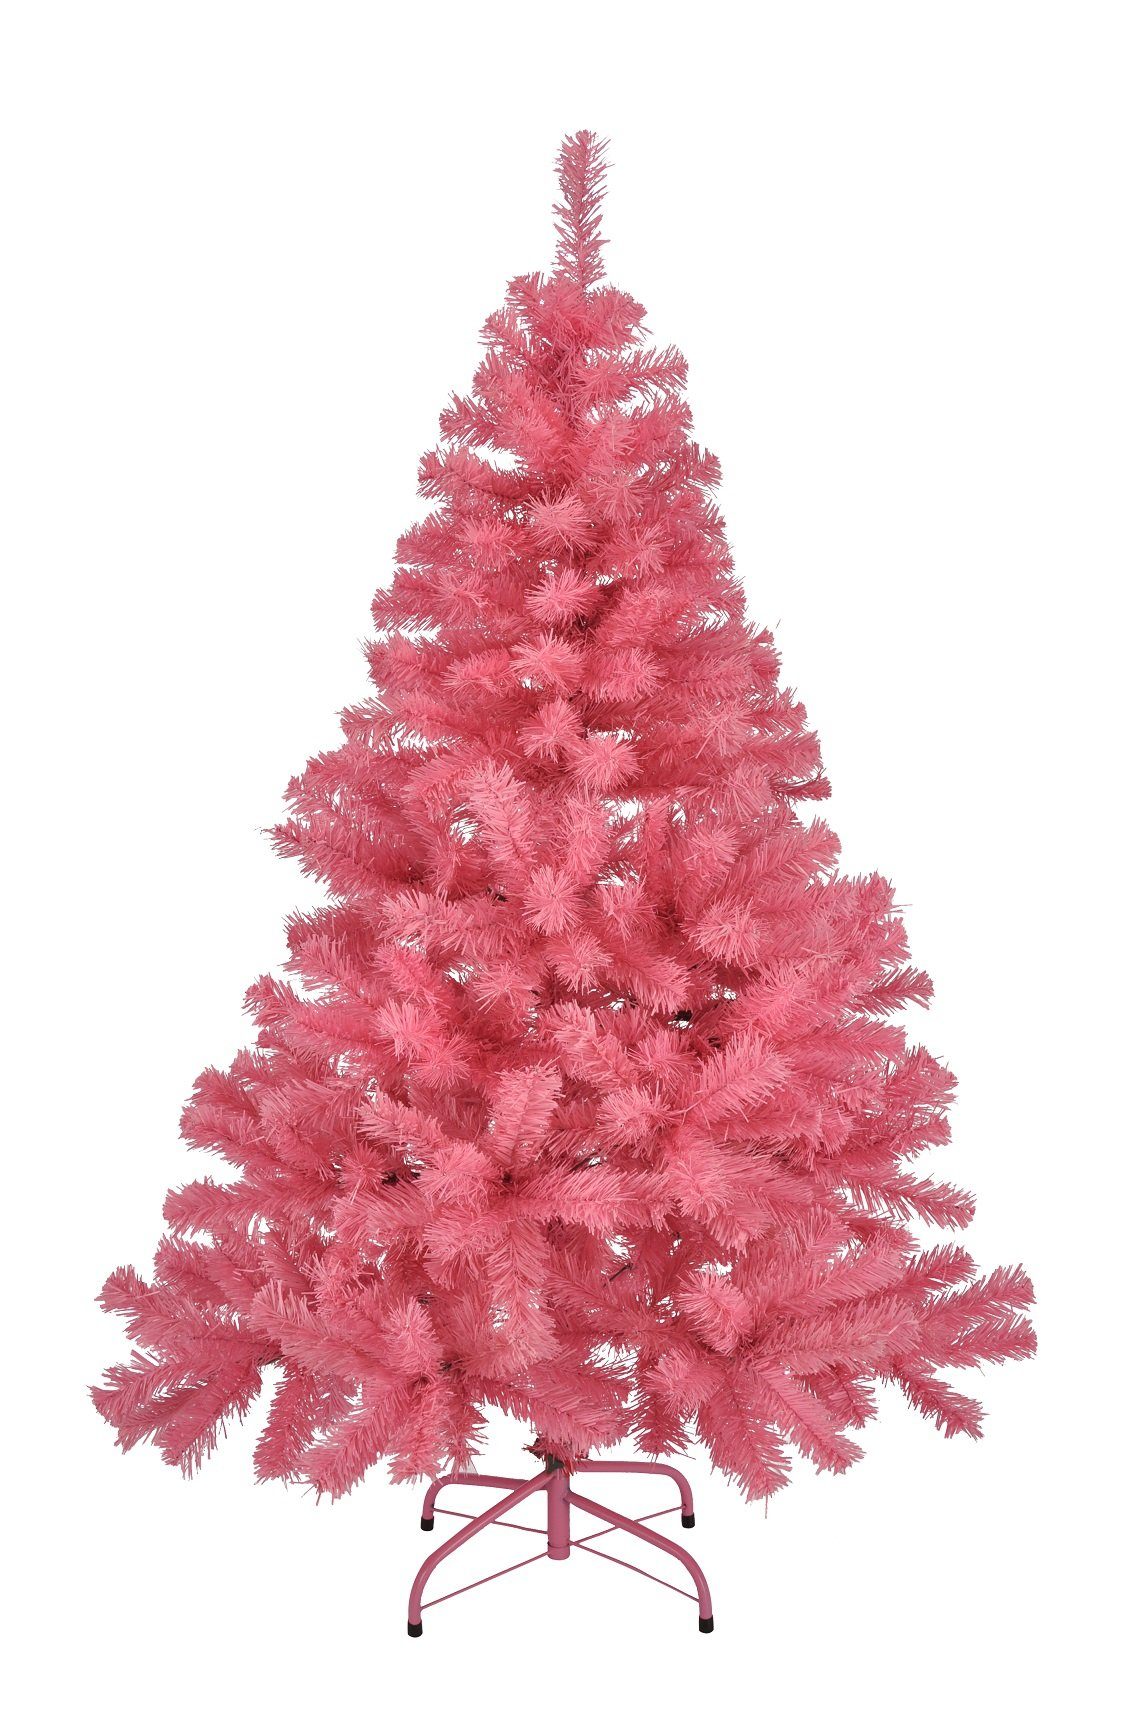 GartenHero Künstlicher Weihnachtsbaum Künstlicher Weihnachtsbaum rosa 150 cm Tannenbaum Baum Weihnachten